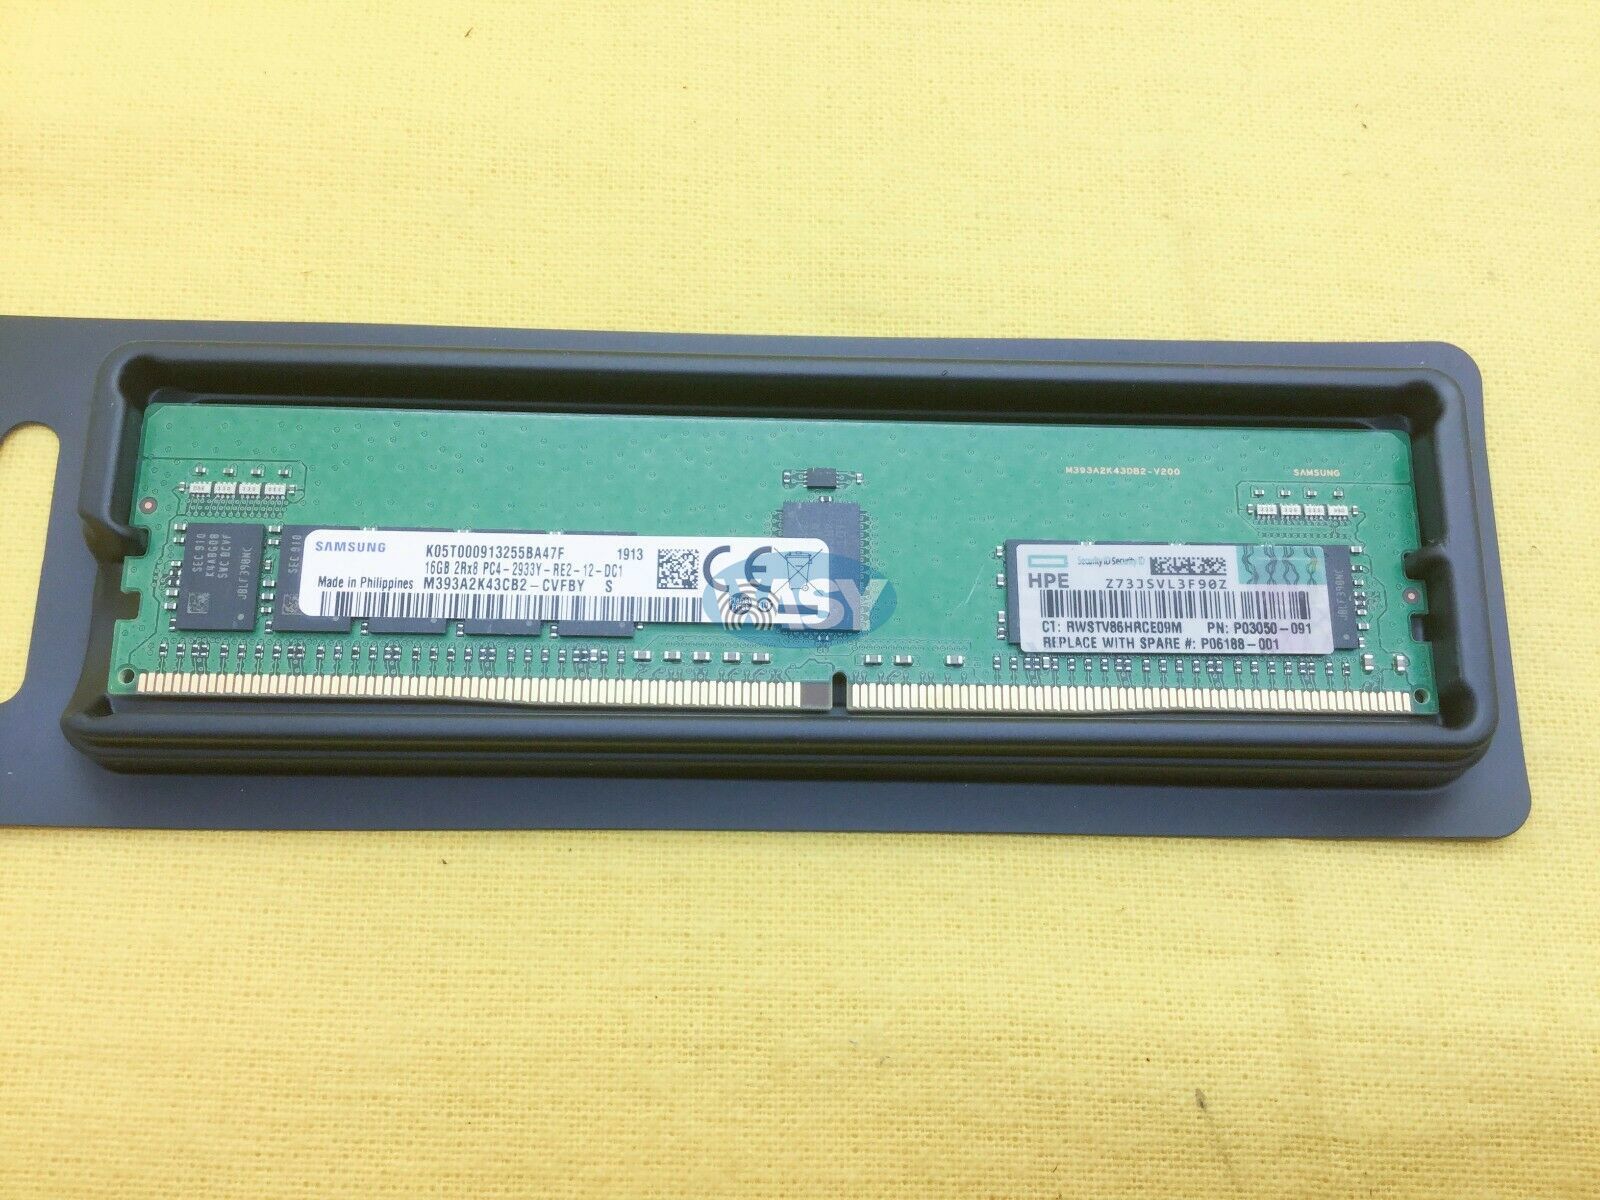 DL380 G9 DL388 DL160 G9 G9 DL80 G9 Registered CAS-15 Memory Kit for HP Proliant DL60 DL180 DL360 G9 Dual Rank x8 PC4-2133P-R G9 DDR4-2133 DL120 G9 Texnite 774171-001 2 x 8GB 16GB